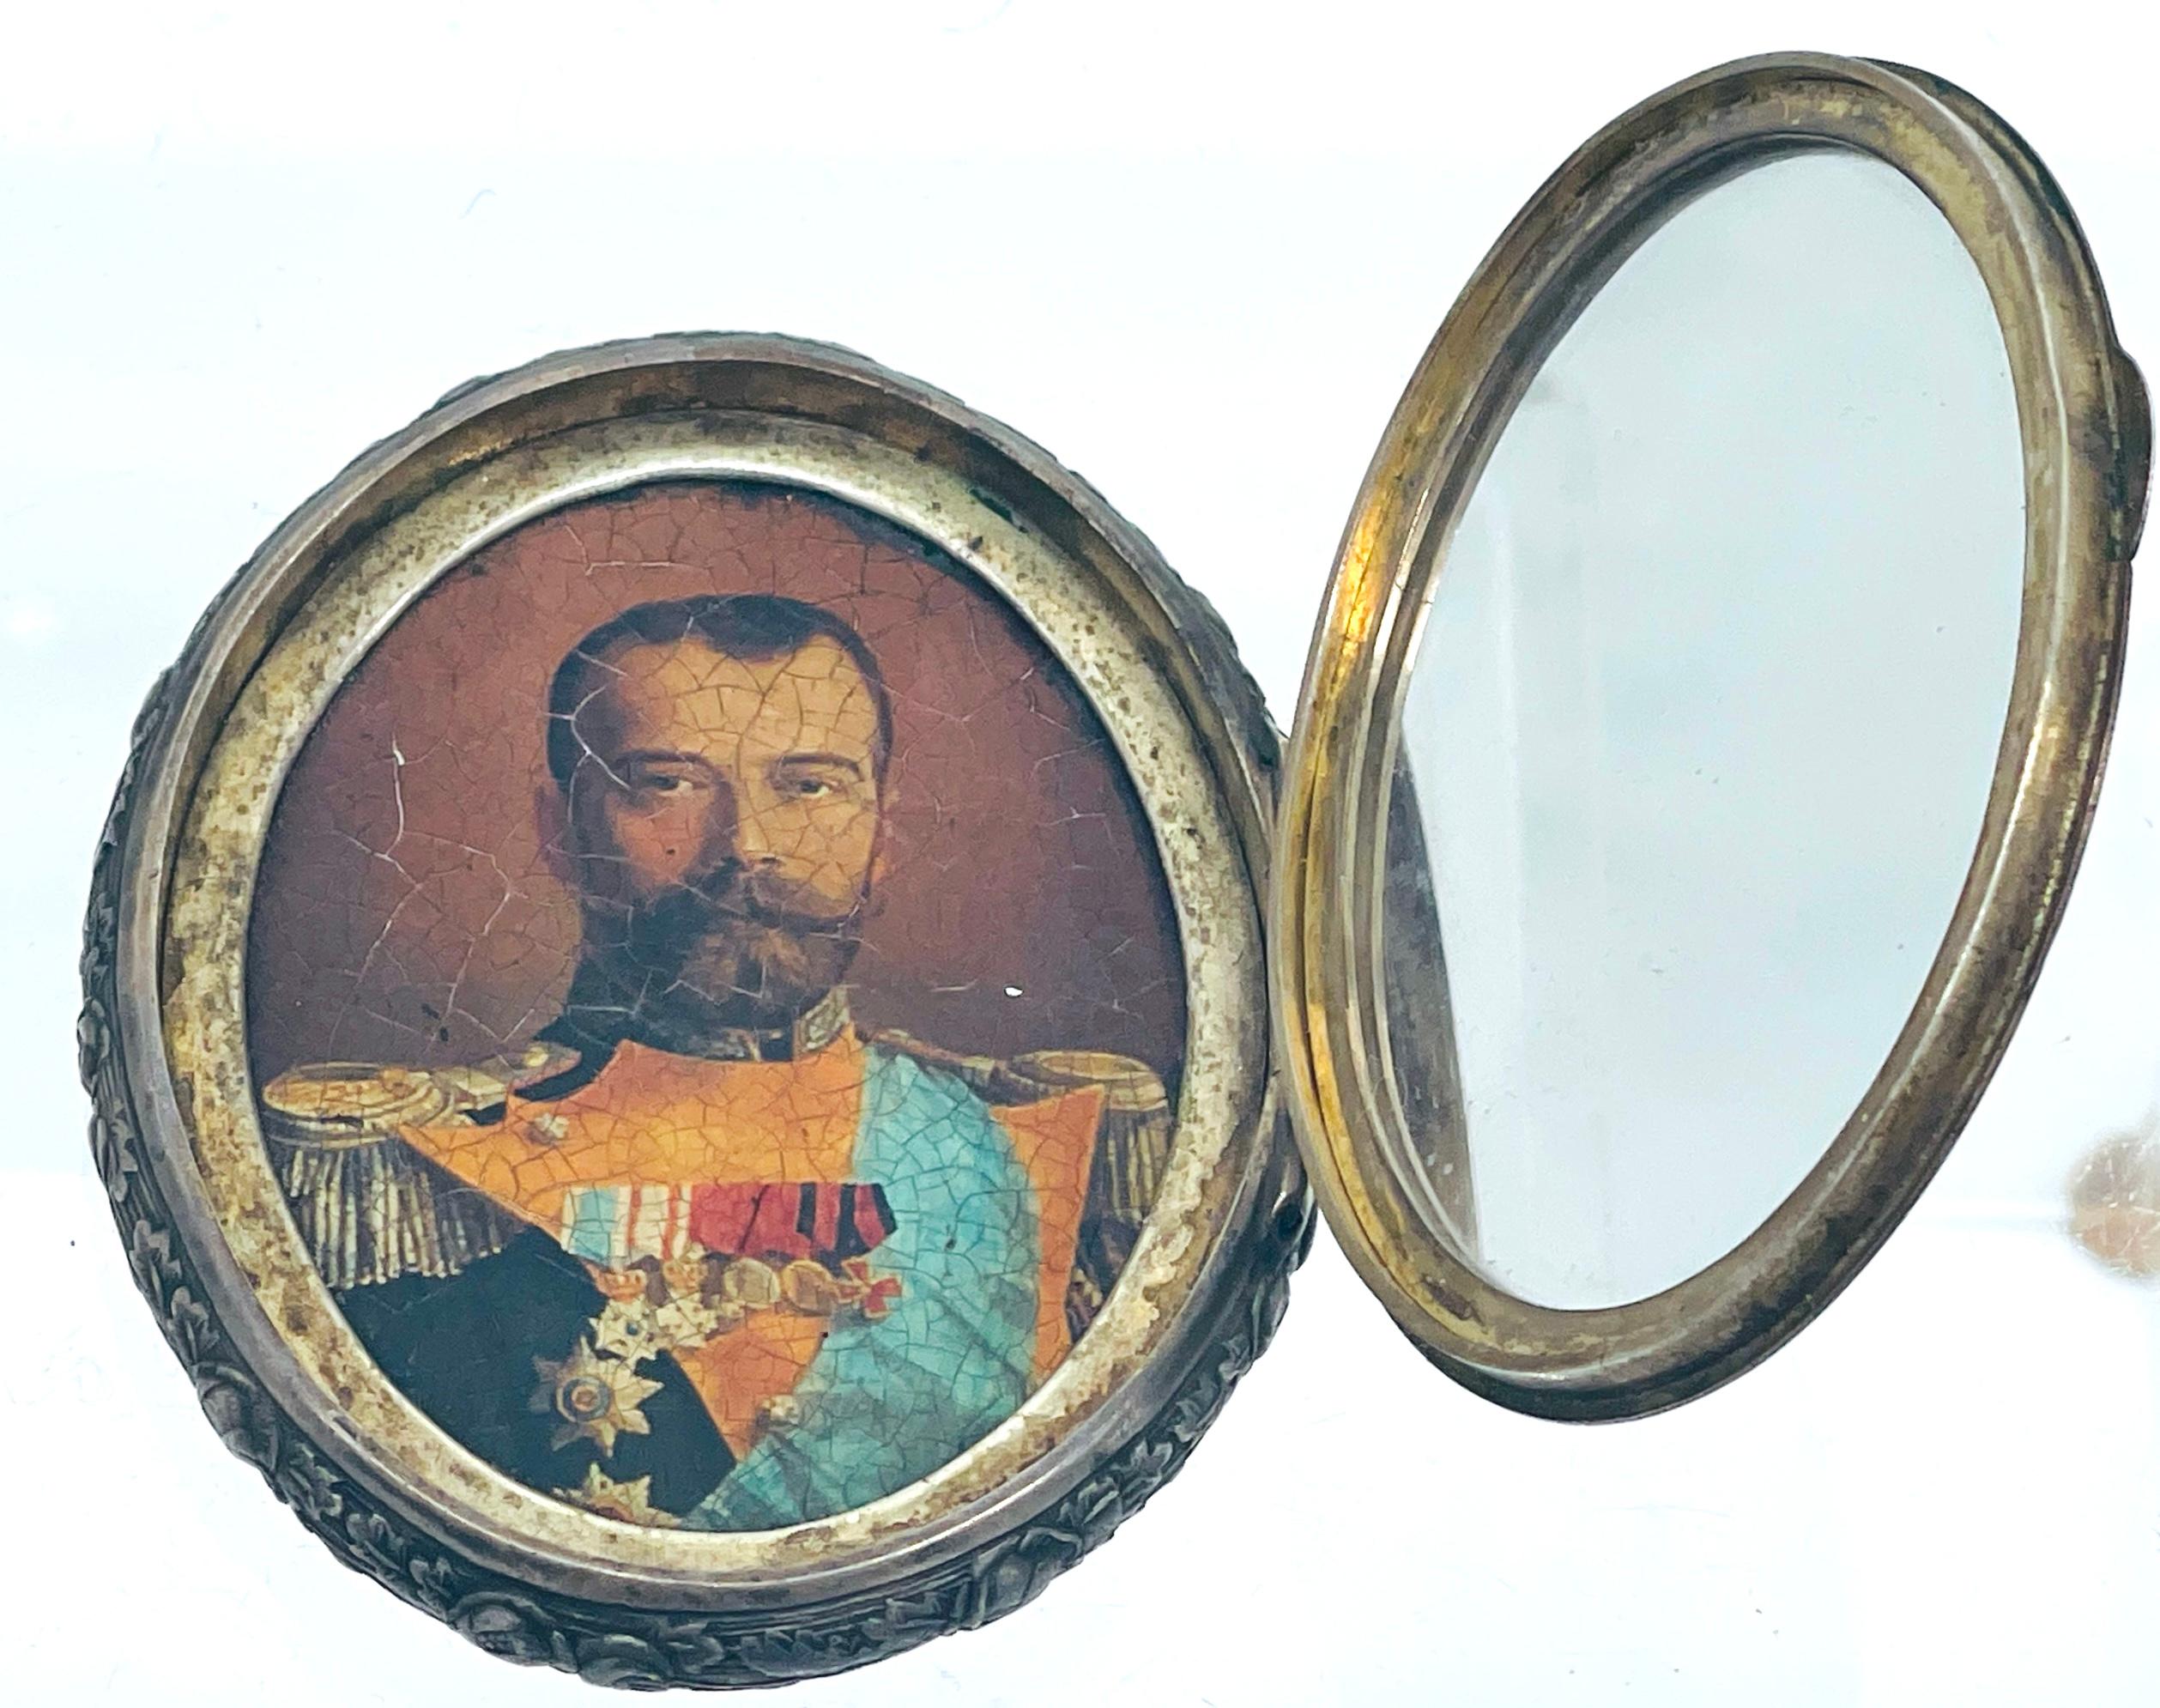 Objet d'art exceptionnel, l'Icône de voyage commémorative russe en argent de 1913 est un hommage poignant au règne du tsar Nicolas II. Réalisée en 1913 pour commémorer le Grand Pèlerinage de l'empereur Nicolas II, cette pièce rare offre un aperçu de